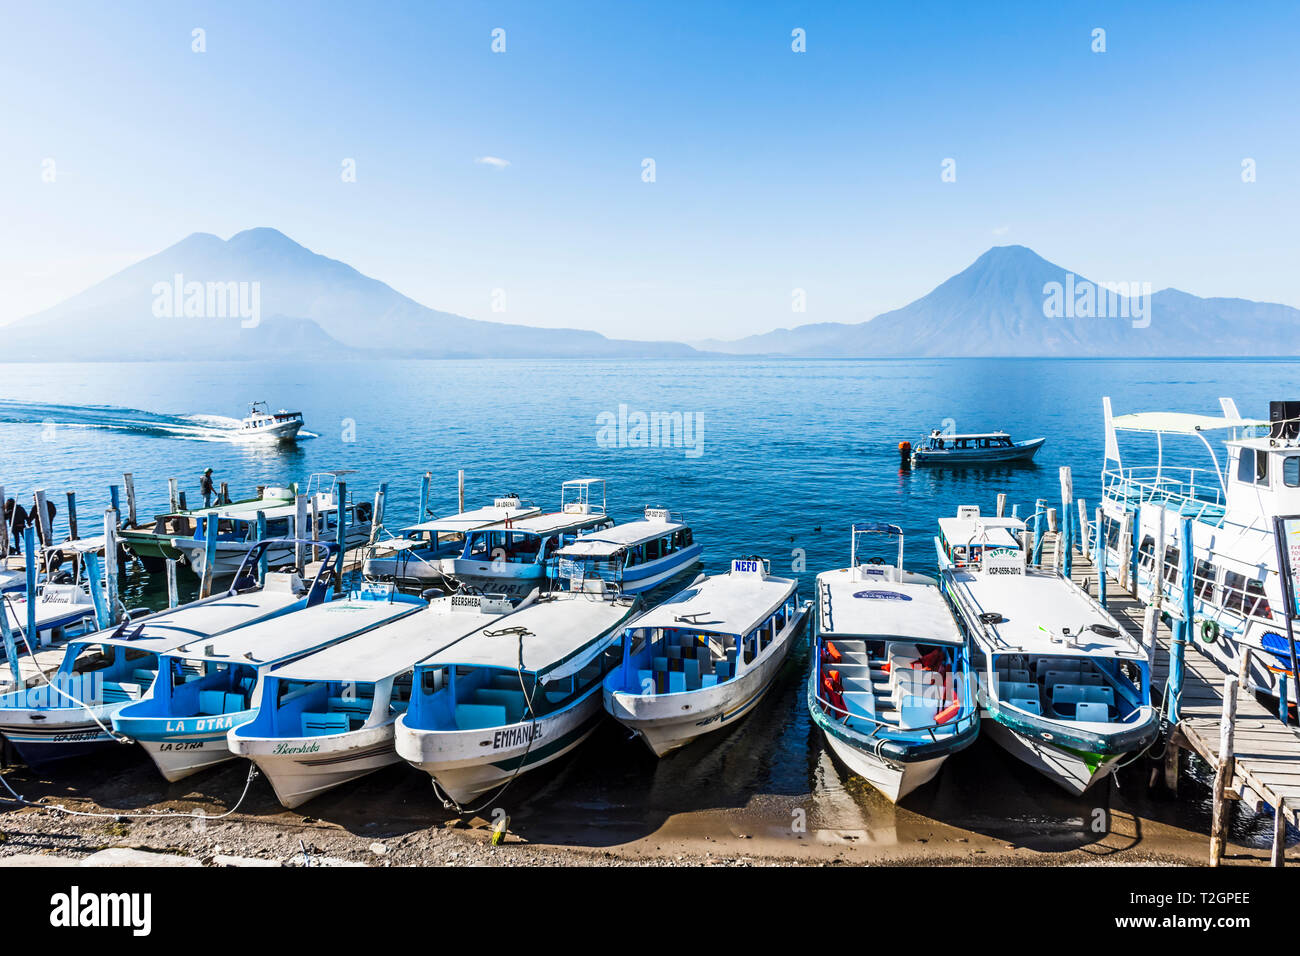 Panajachel, lago Atitlan, Guatemala - 23 dicembre 2018: barche tirate fino alla spiaggia con Toliman, Atitlan & San Pedro vulcani sull orizzonte in Panajachel Foto Stock